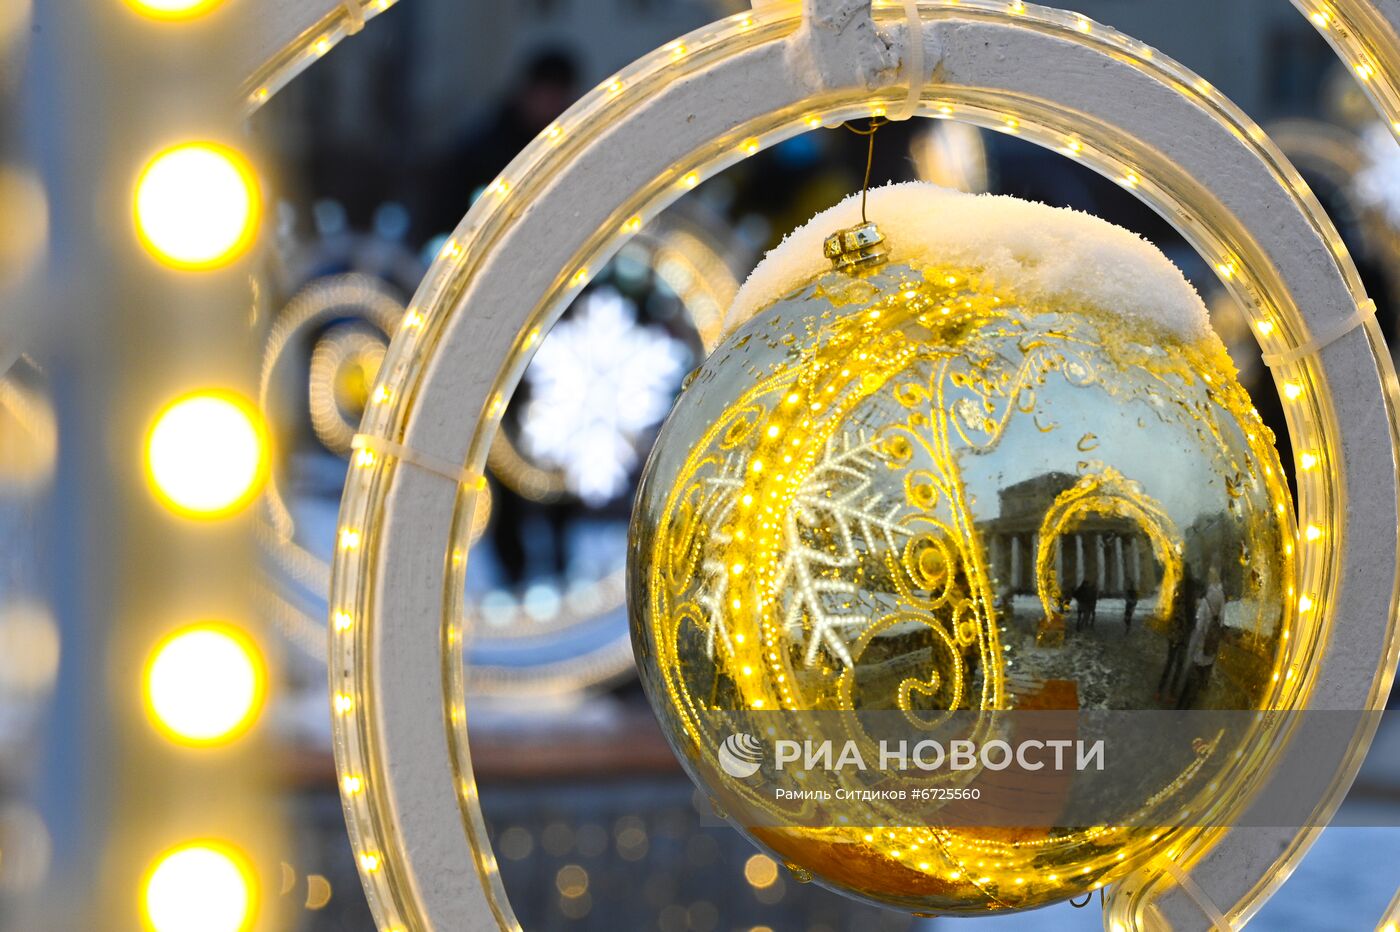 Праздничное украшение Москвы к Новому году 